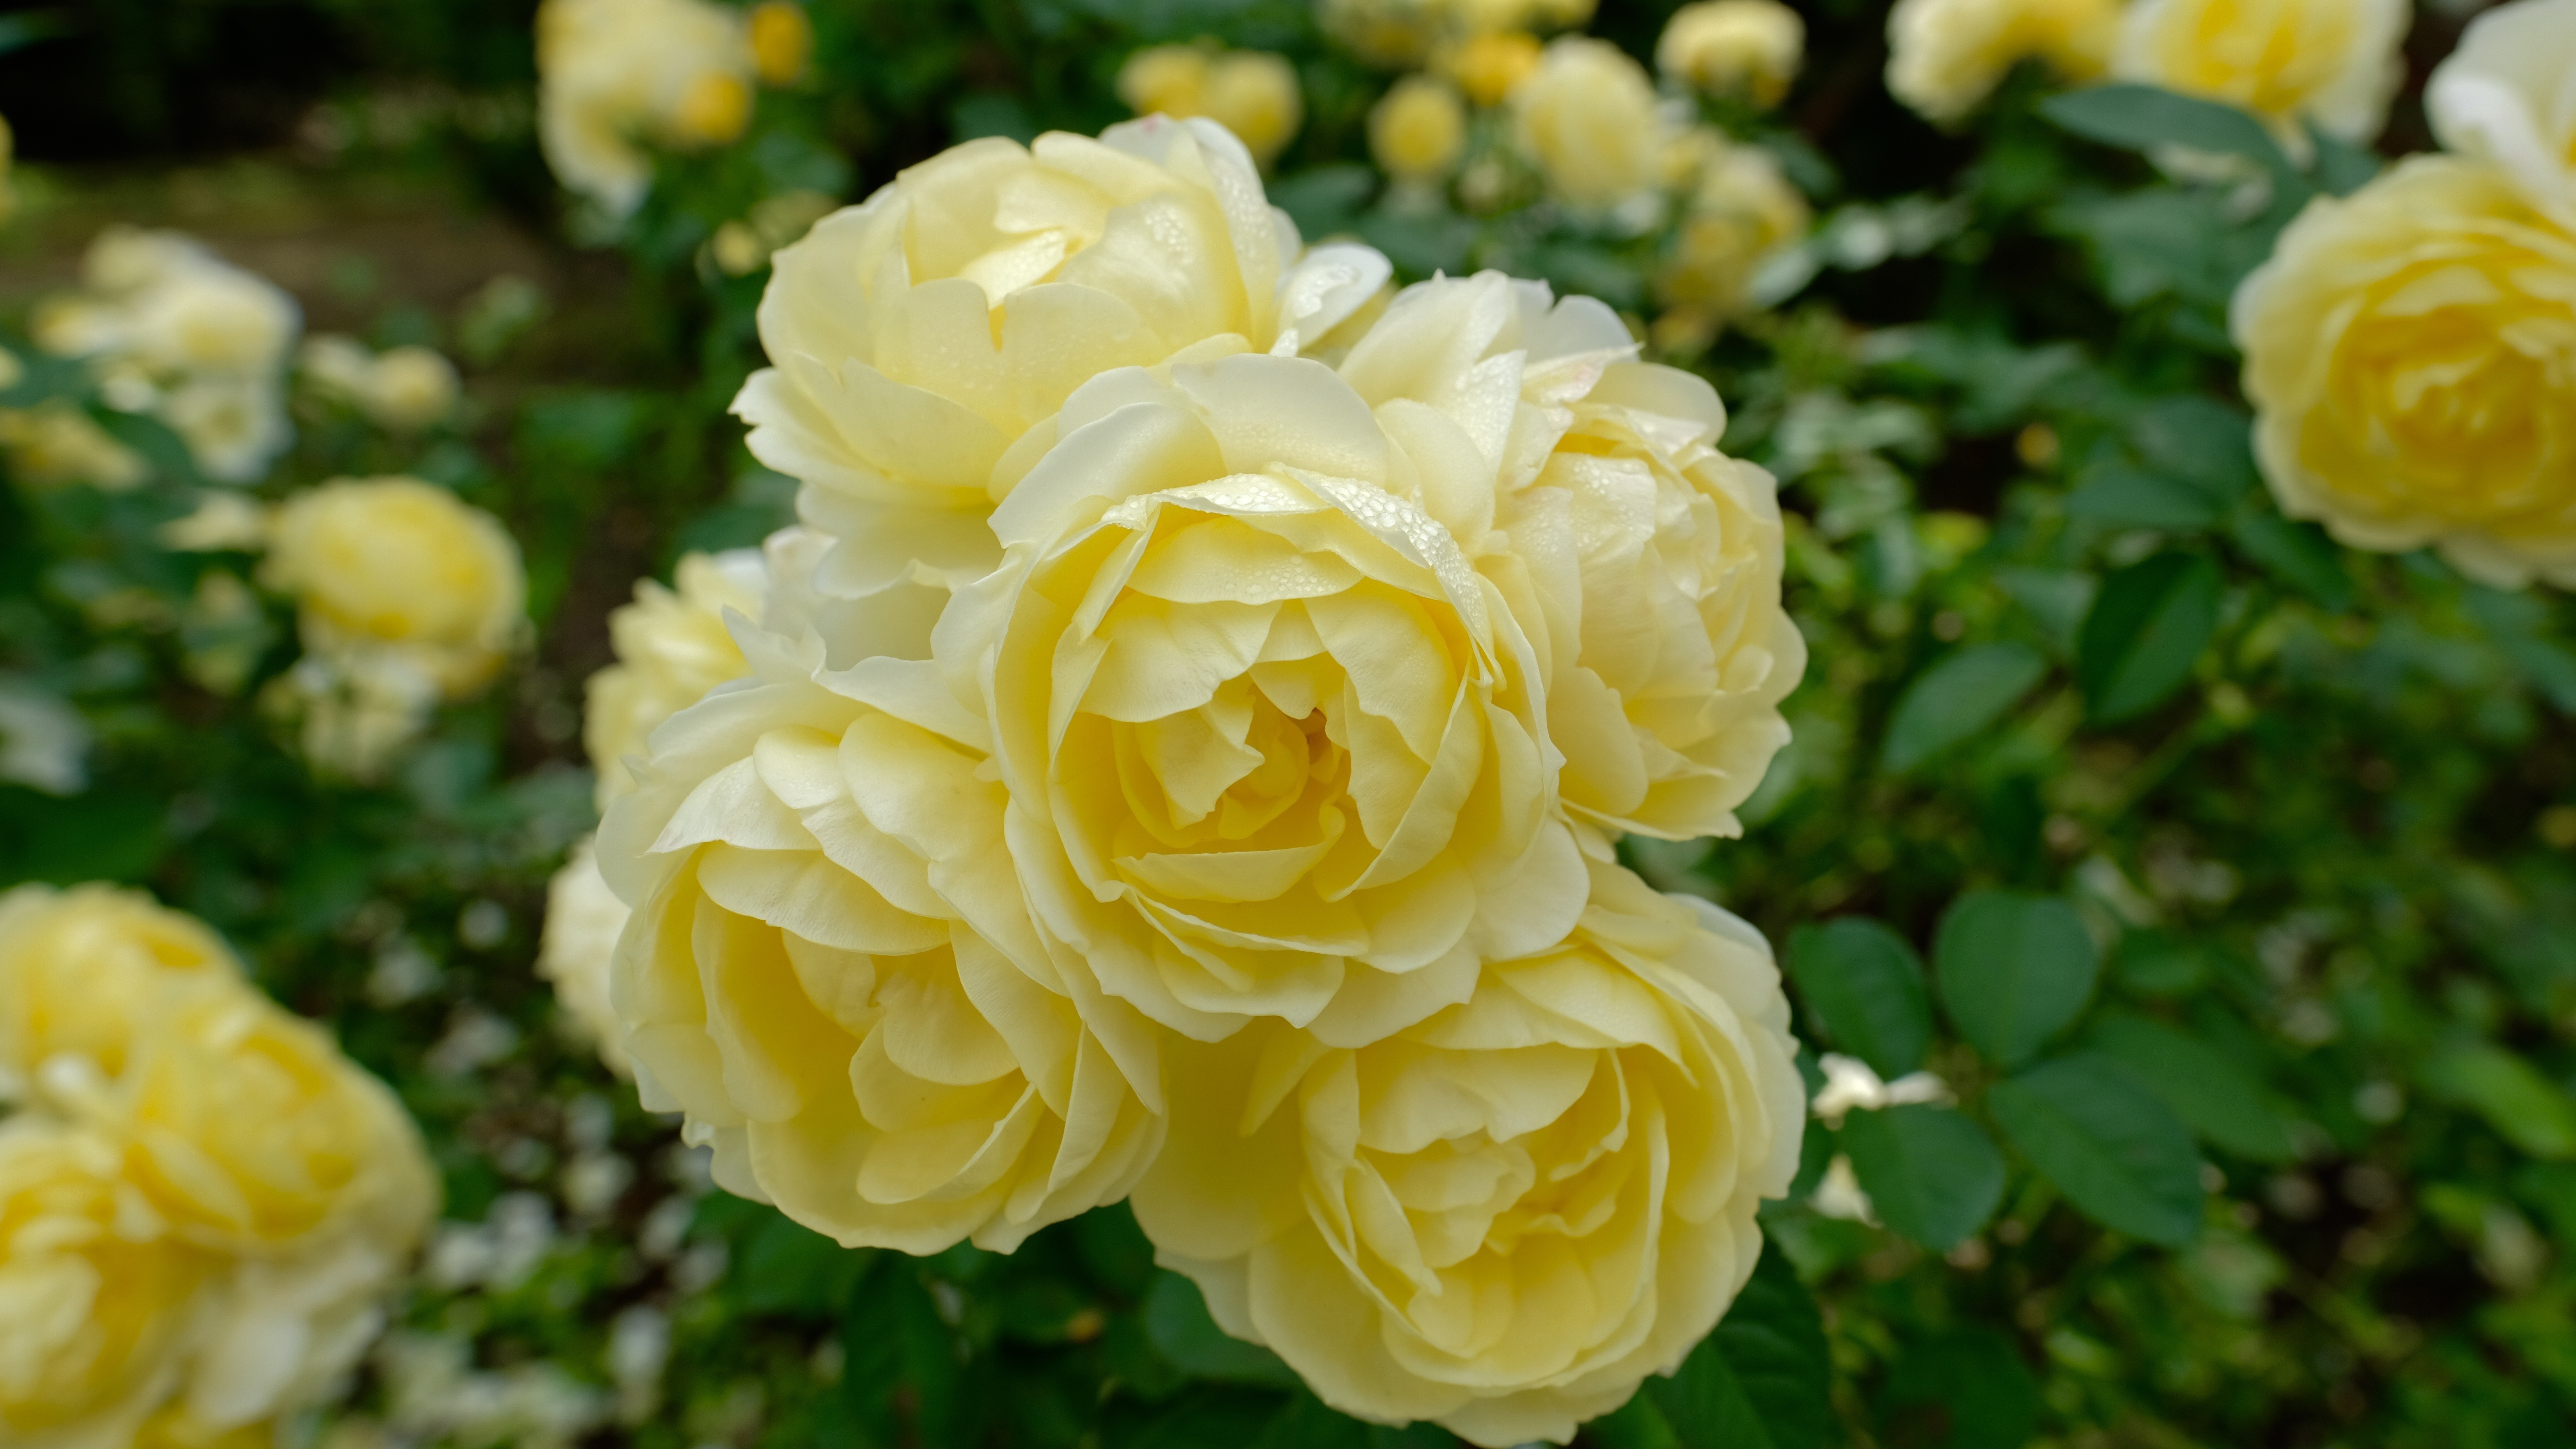 Скачать обои бесплатно Роза, Желтый Цветок, Земля/природа, Желтая Роза картинка на рабочий стол ПК